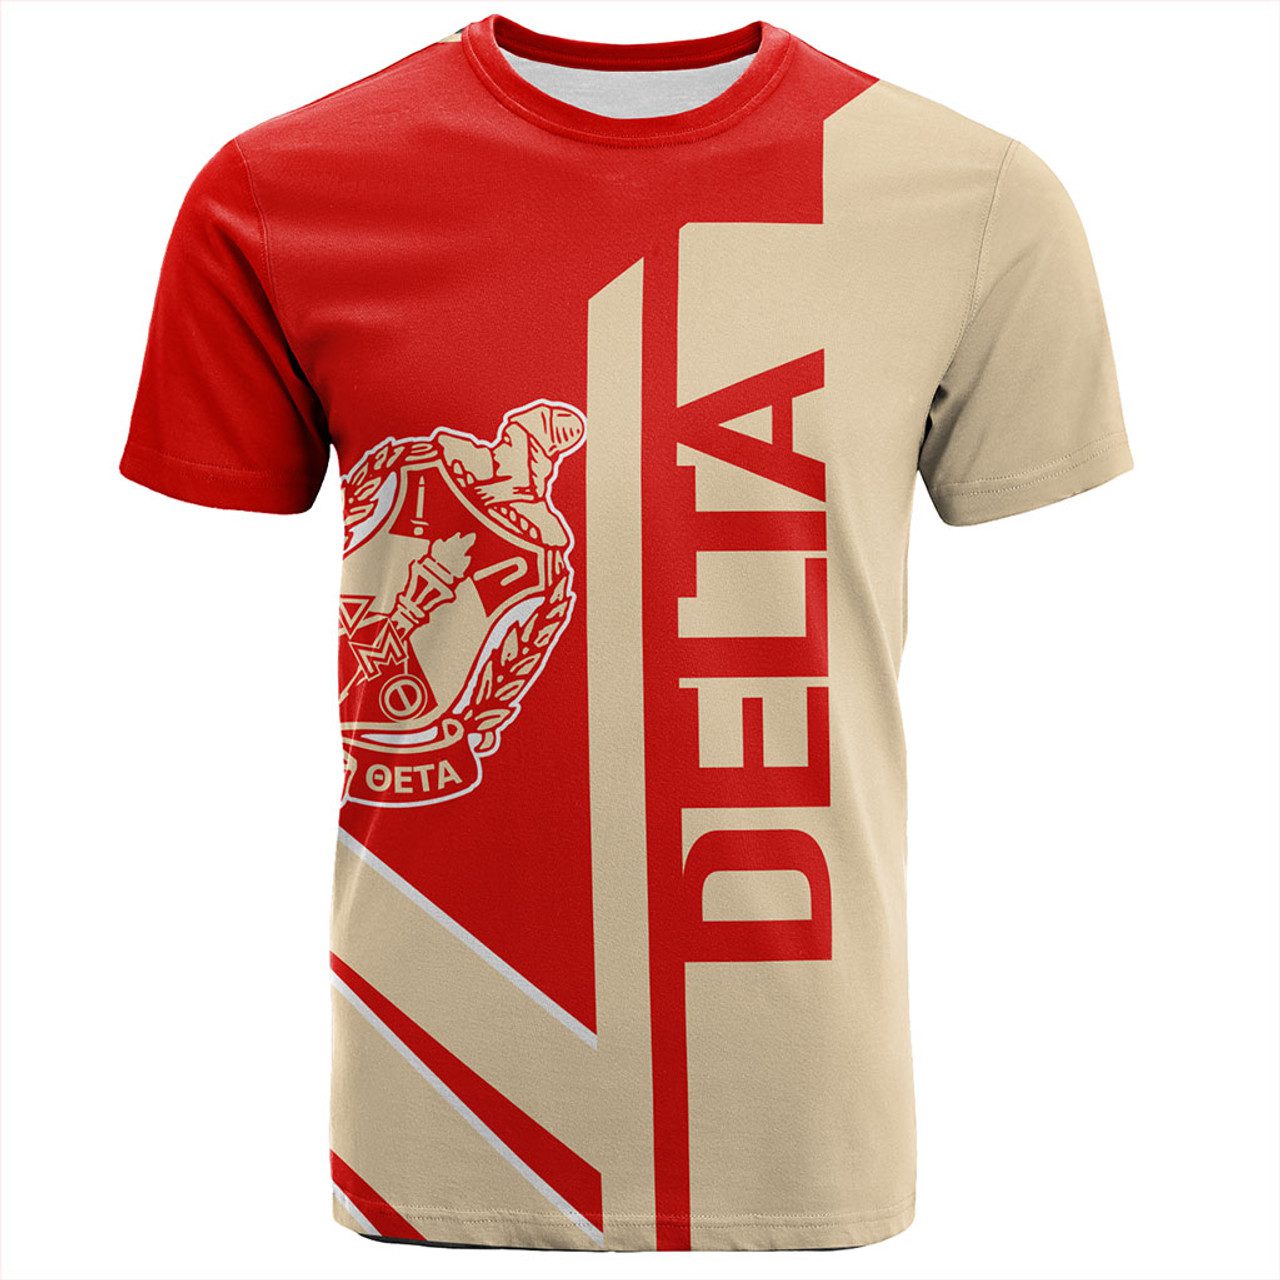 Delta Sigma Theta T-Shirt Half Concept